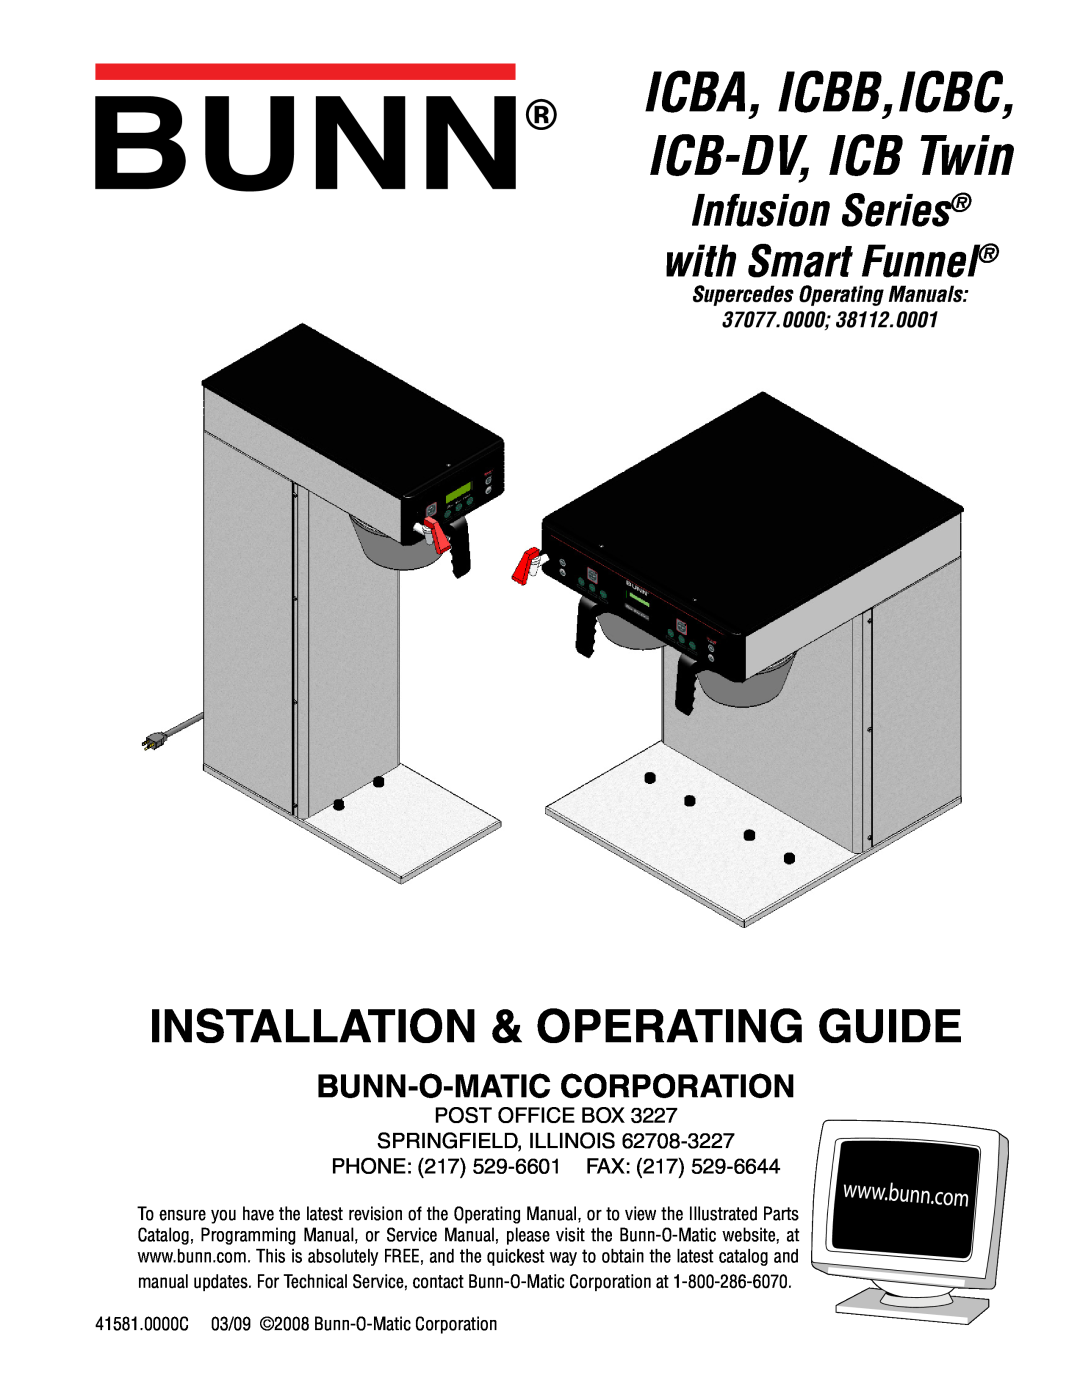 Bunn manual ICBA, ICBB,ICBC, ICB-DV, ICB Twin, Infusion Series con Smart Funnel, Manual De Instalación Y Operación 